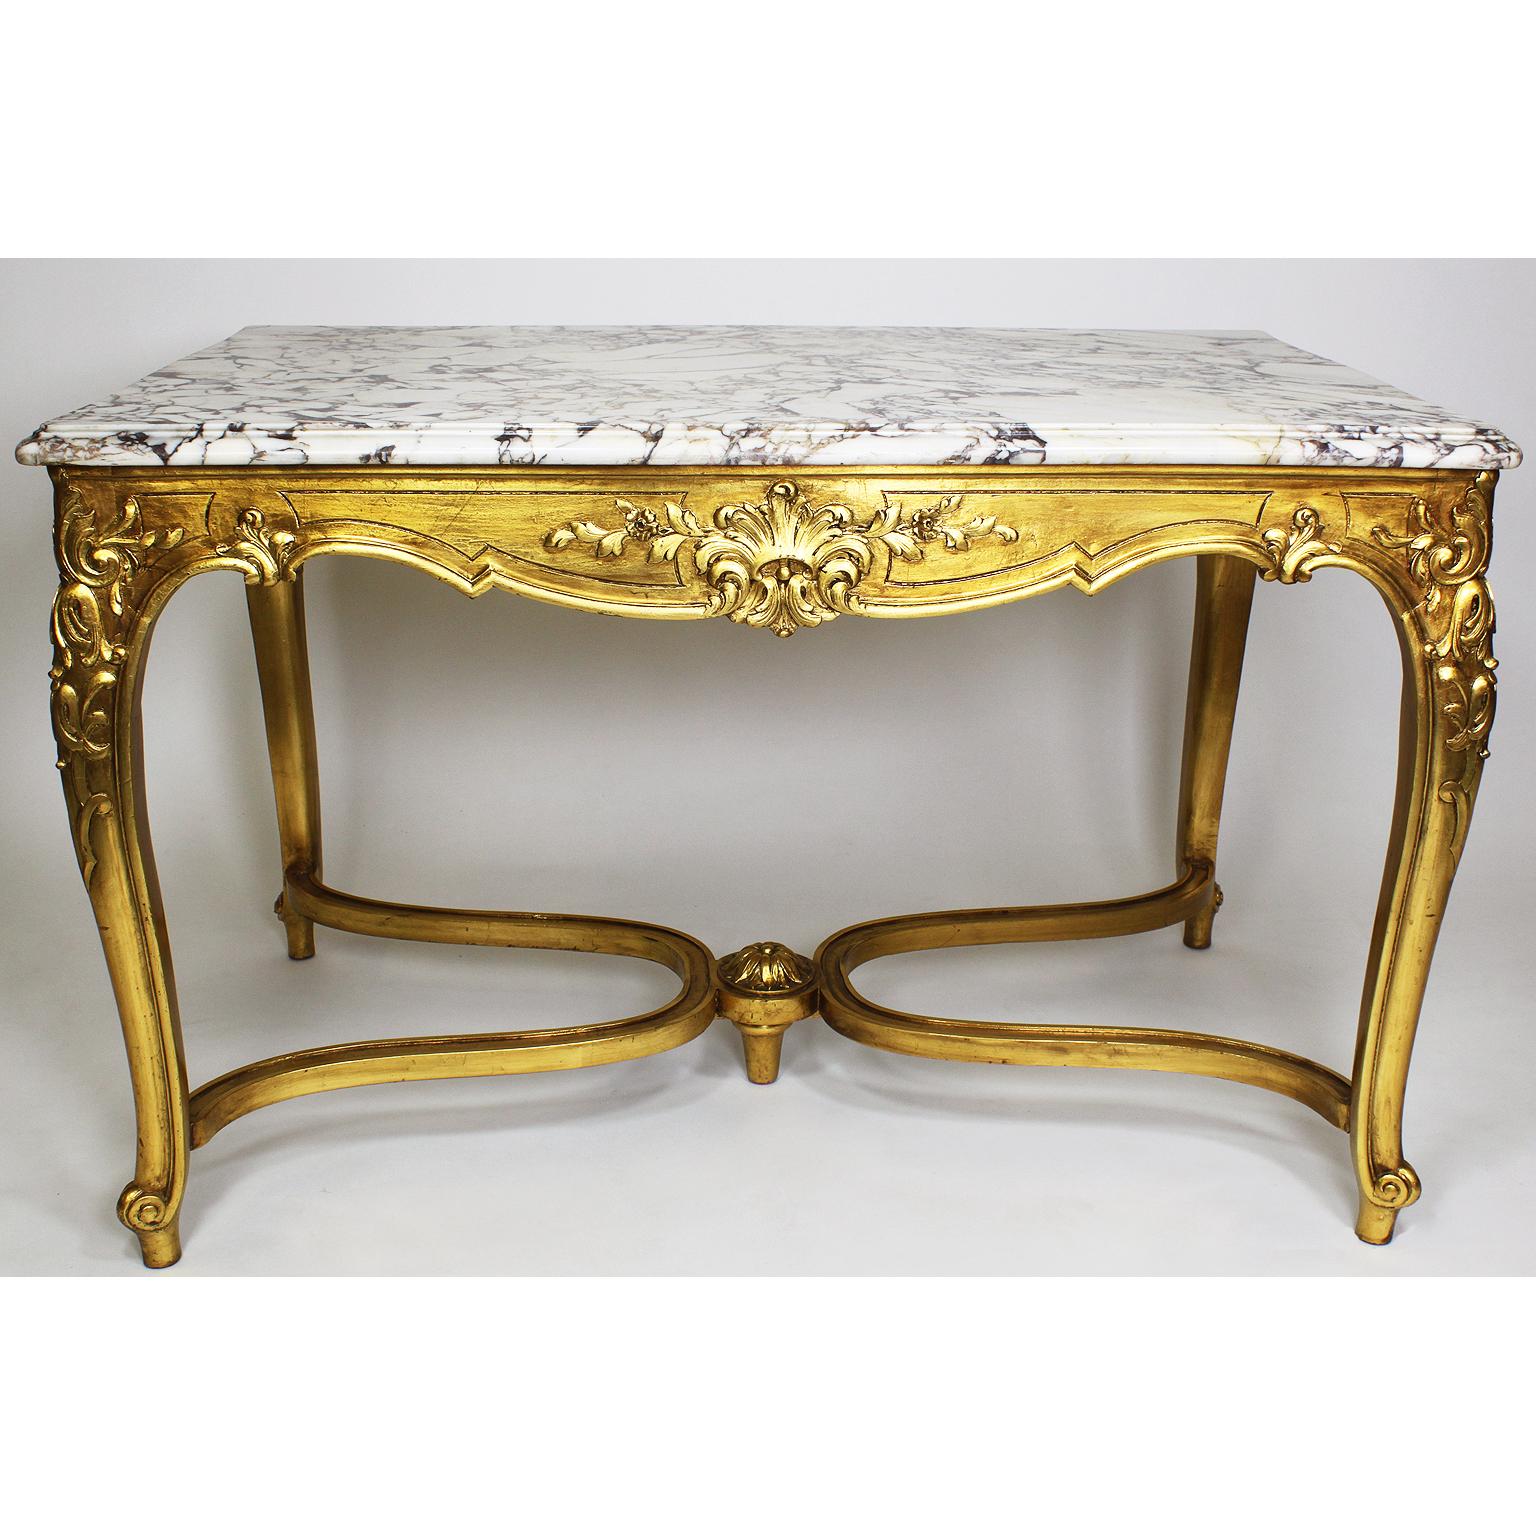 Französisch Anfang des 20. Jahrhunderts Louis XV Stil vergoldetes Holz geschnitzt Center Tisch mit geäderten weißen Marmorplatte. CIRCA: Paris, 1920.

Höhe: 30 1/2 Zoll (77,5 cm)
Breite: 48 Zoll (121,9 cm)
Tiefe: 30 3/8 Zoll (77,2 cm)

Bez.: